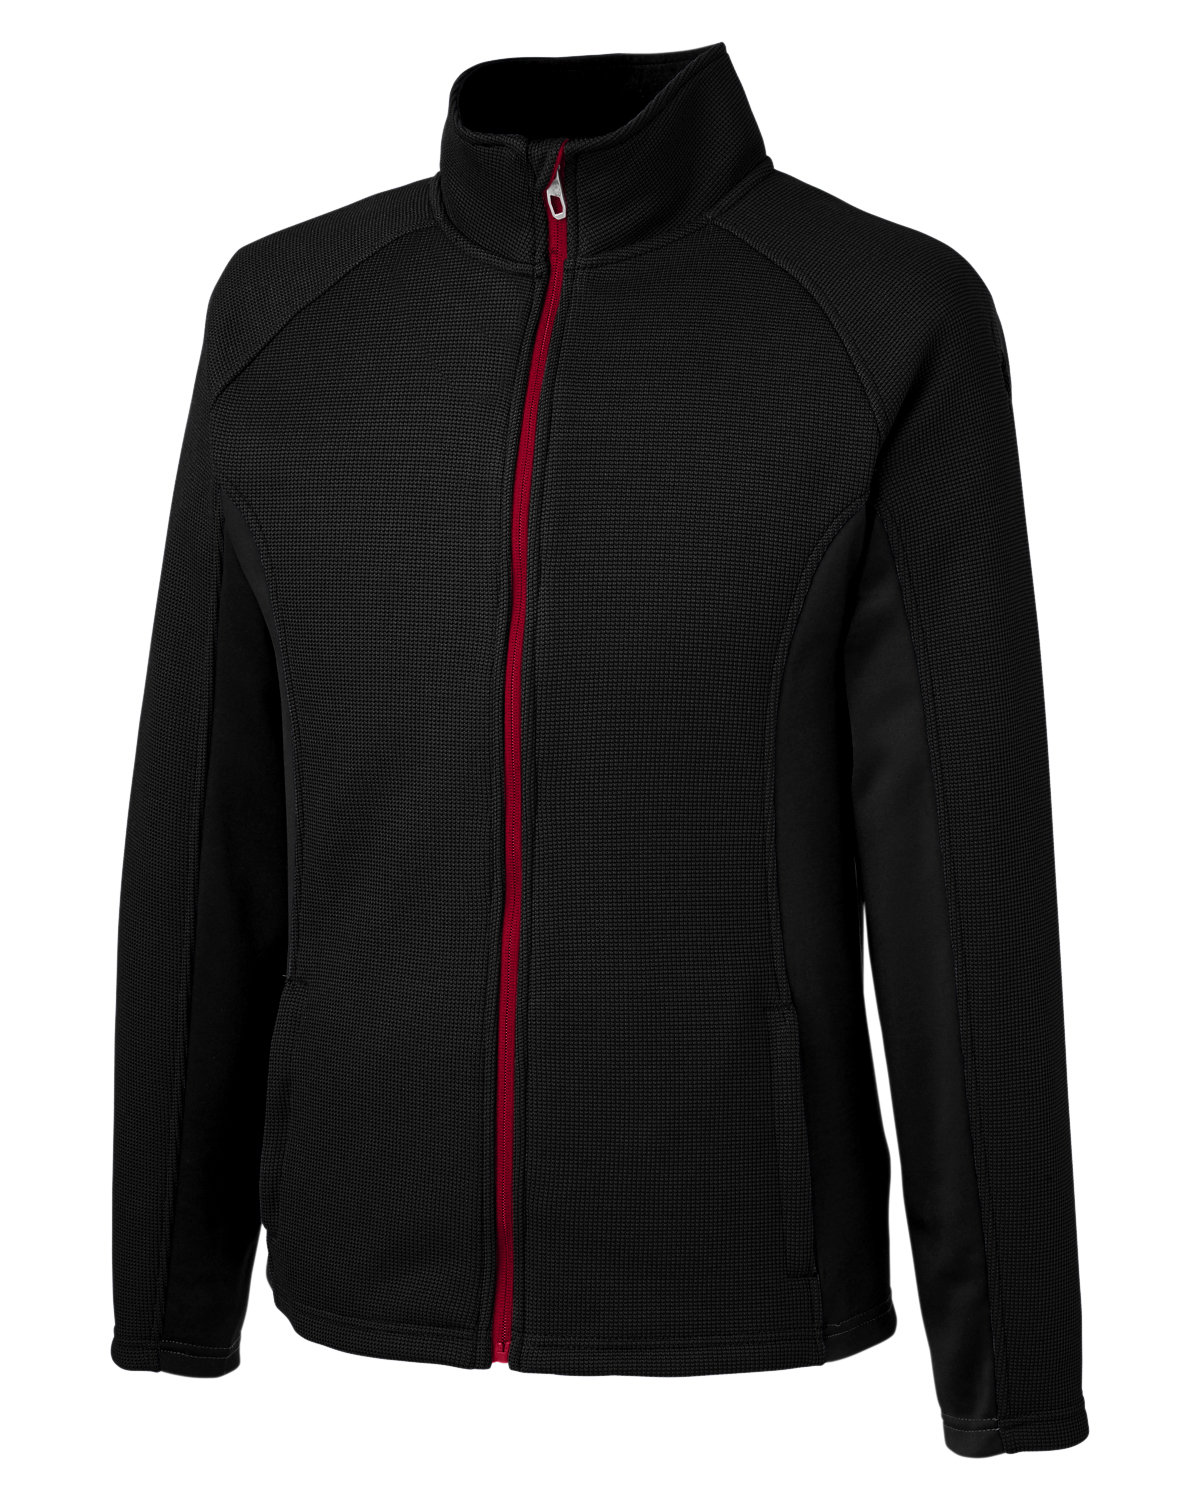 Spyder Men's Constant Full-Zip Sweater Fleece Jacket | alphabroder Canada